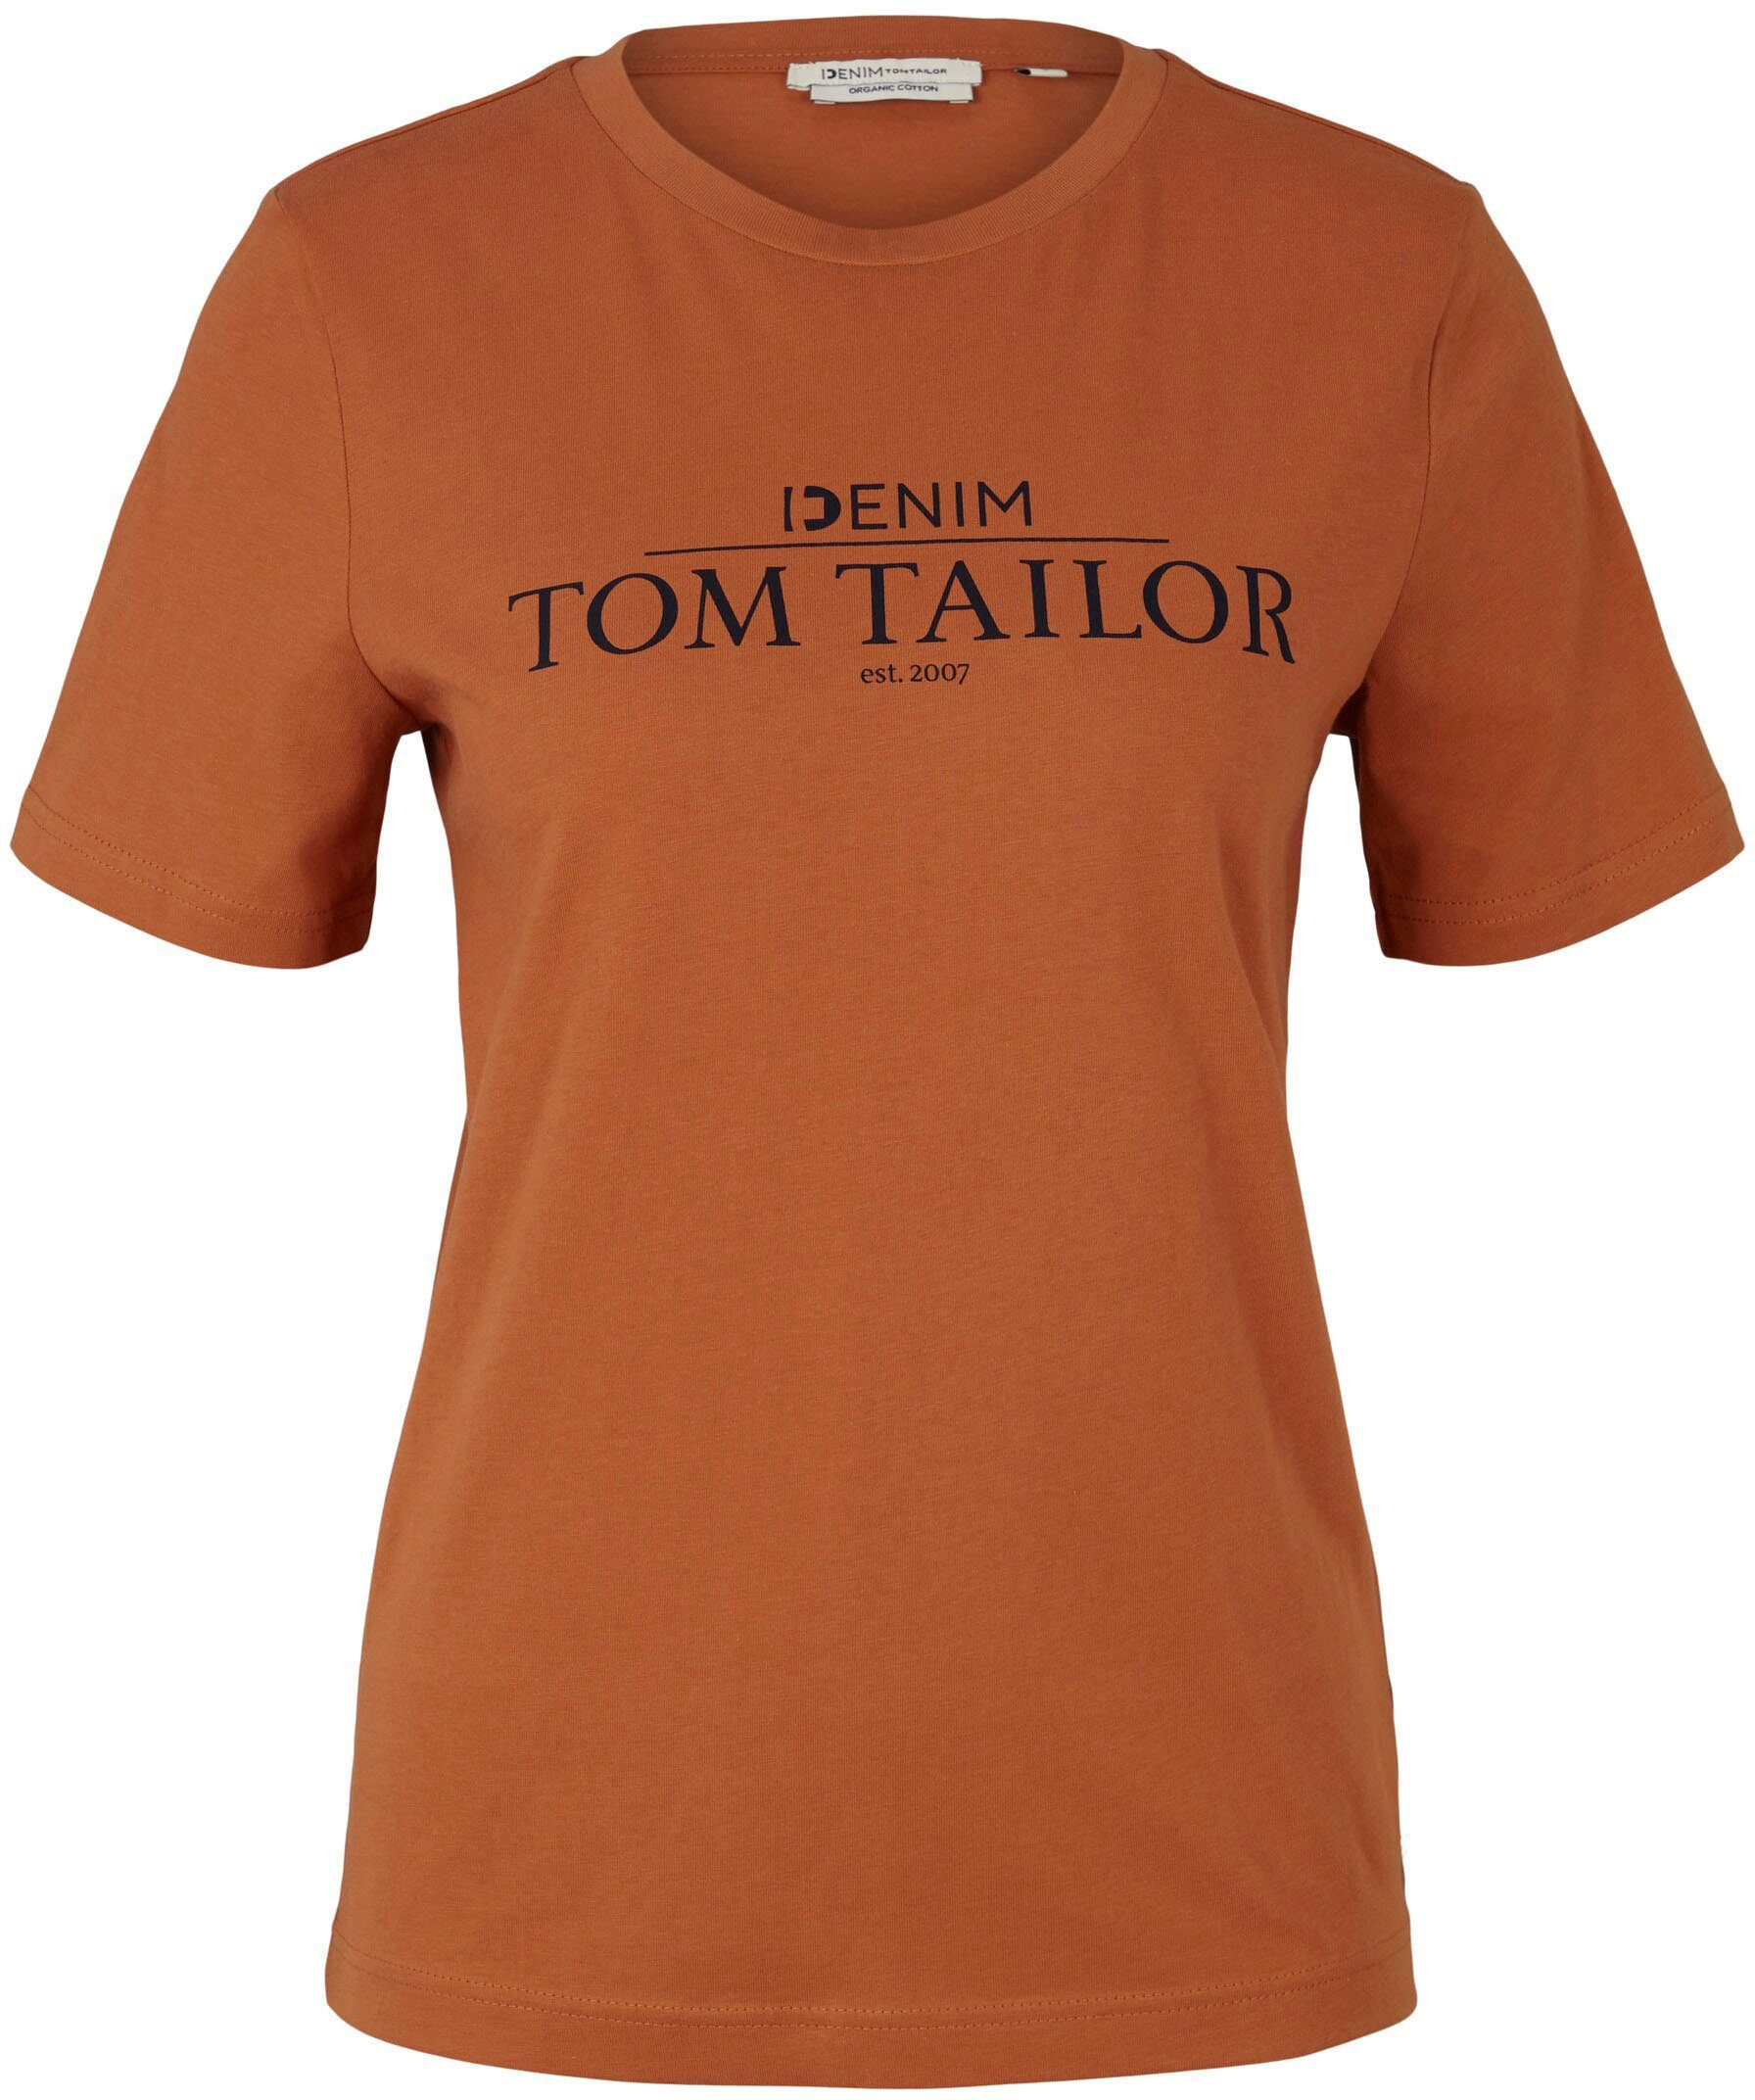 der amber auf TOM mit T-Shirt TAILOR Brust Denim Print Logo